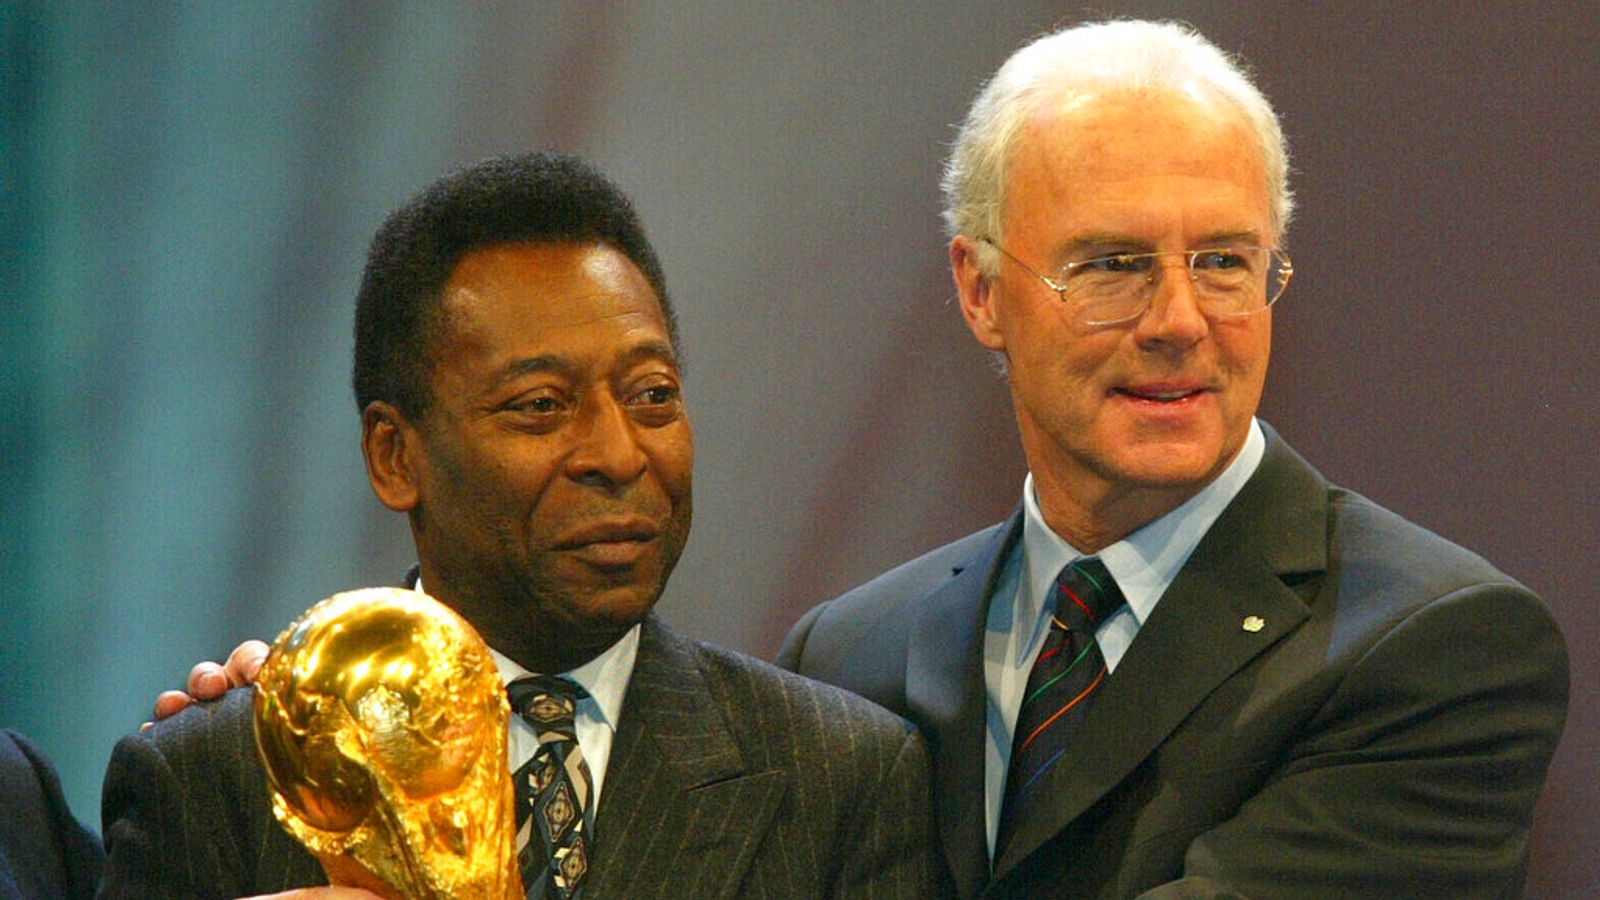 Franz Beckenbauer: German football legend dies aged 78